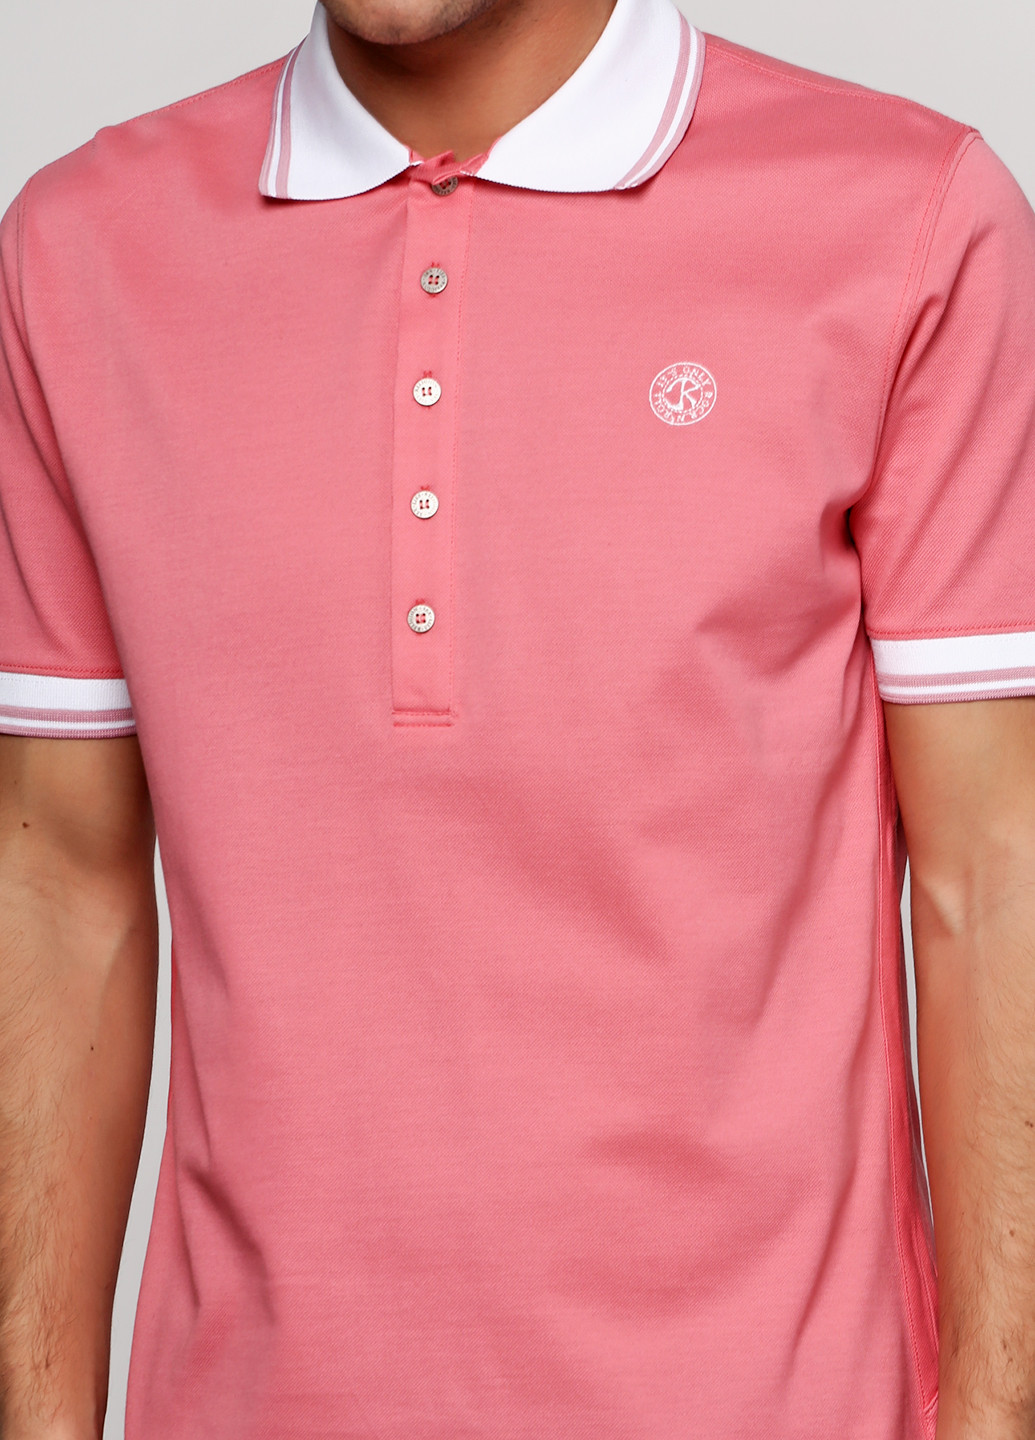 Розовая футболка-поло для мужчин Richmond